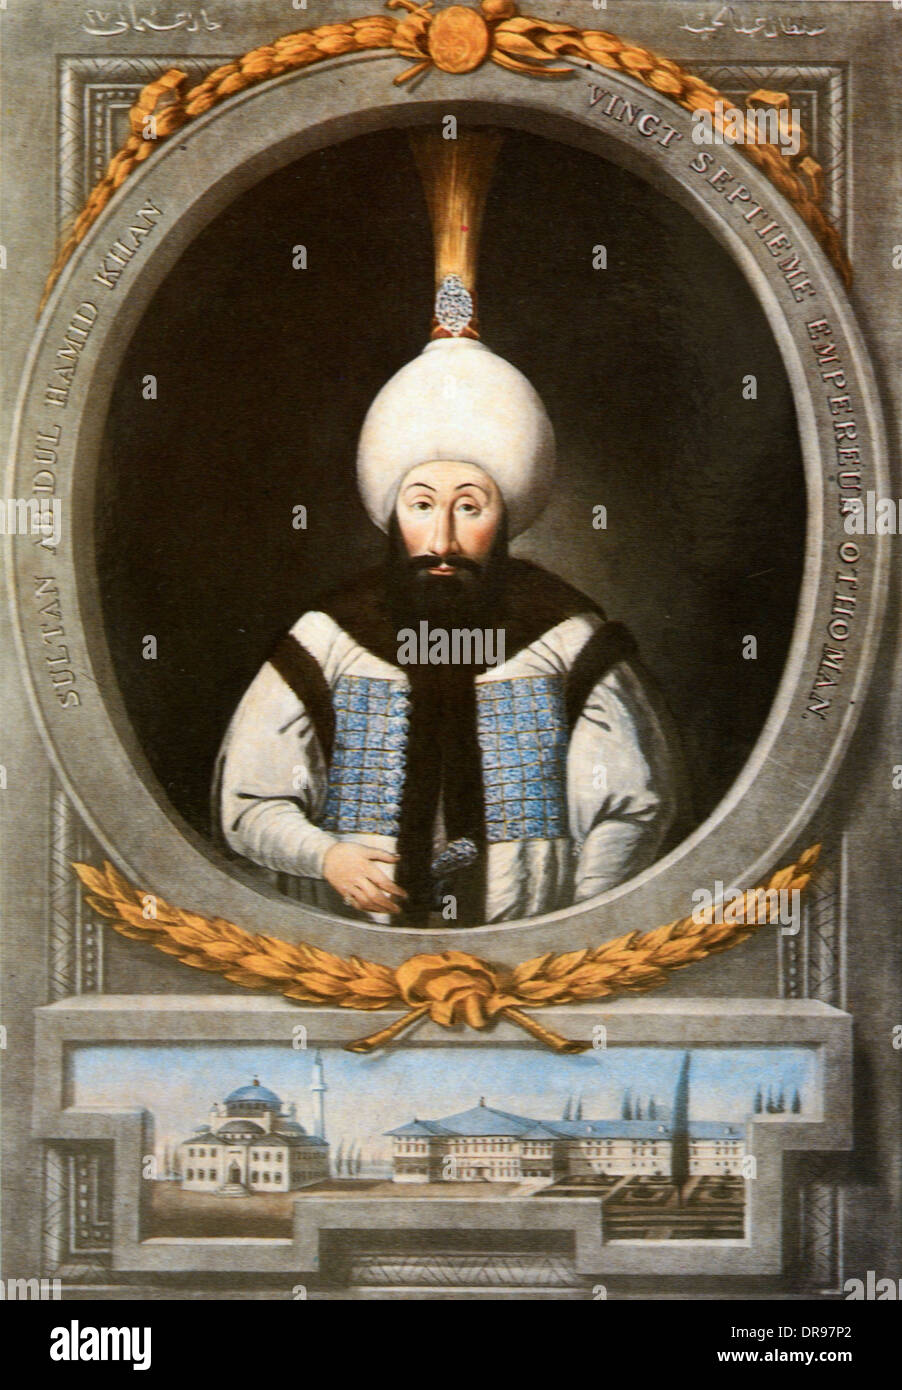 Le turc Sultan Ottoman Abdulhamid I (1725-1789), Abdul Hamid 1 ou Abd Al-Hamid 1 Peinture Portrait Banque D'Images